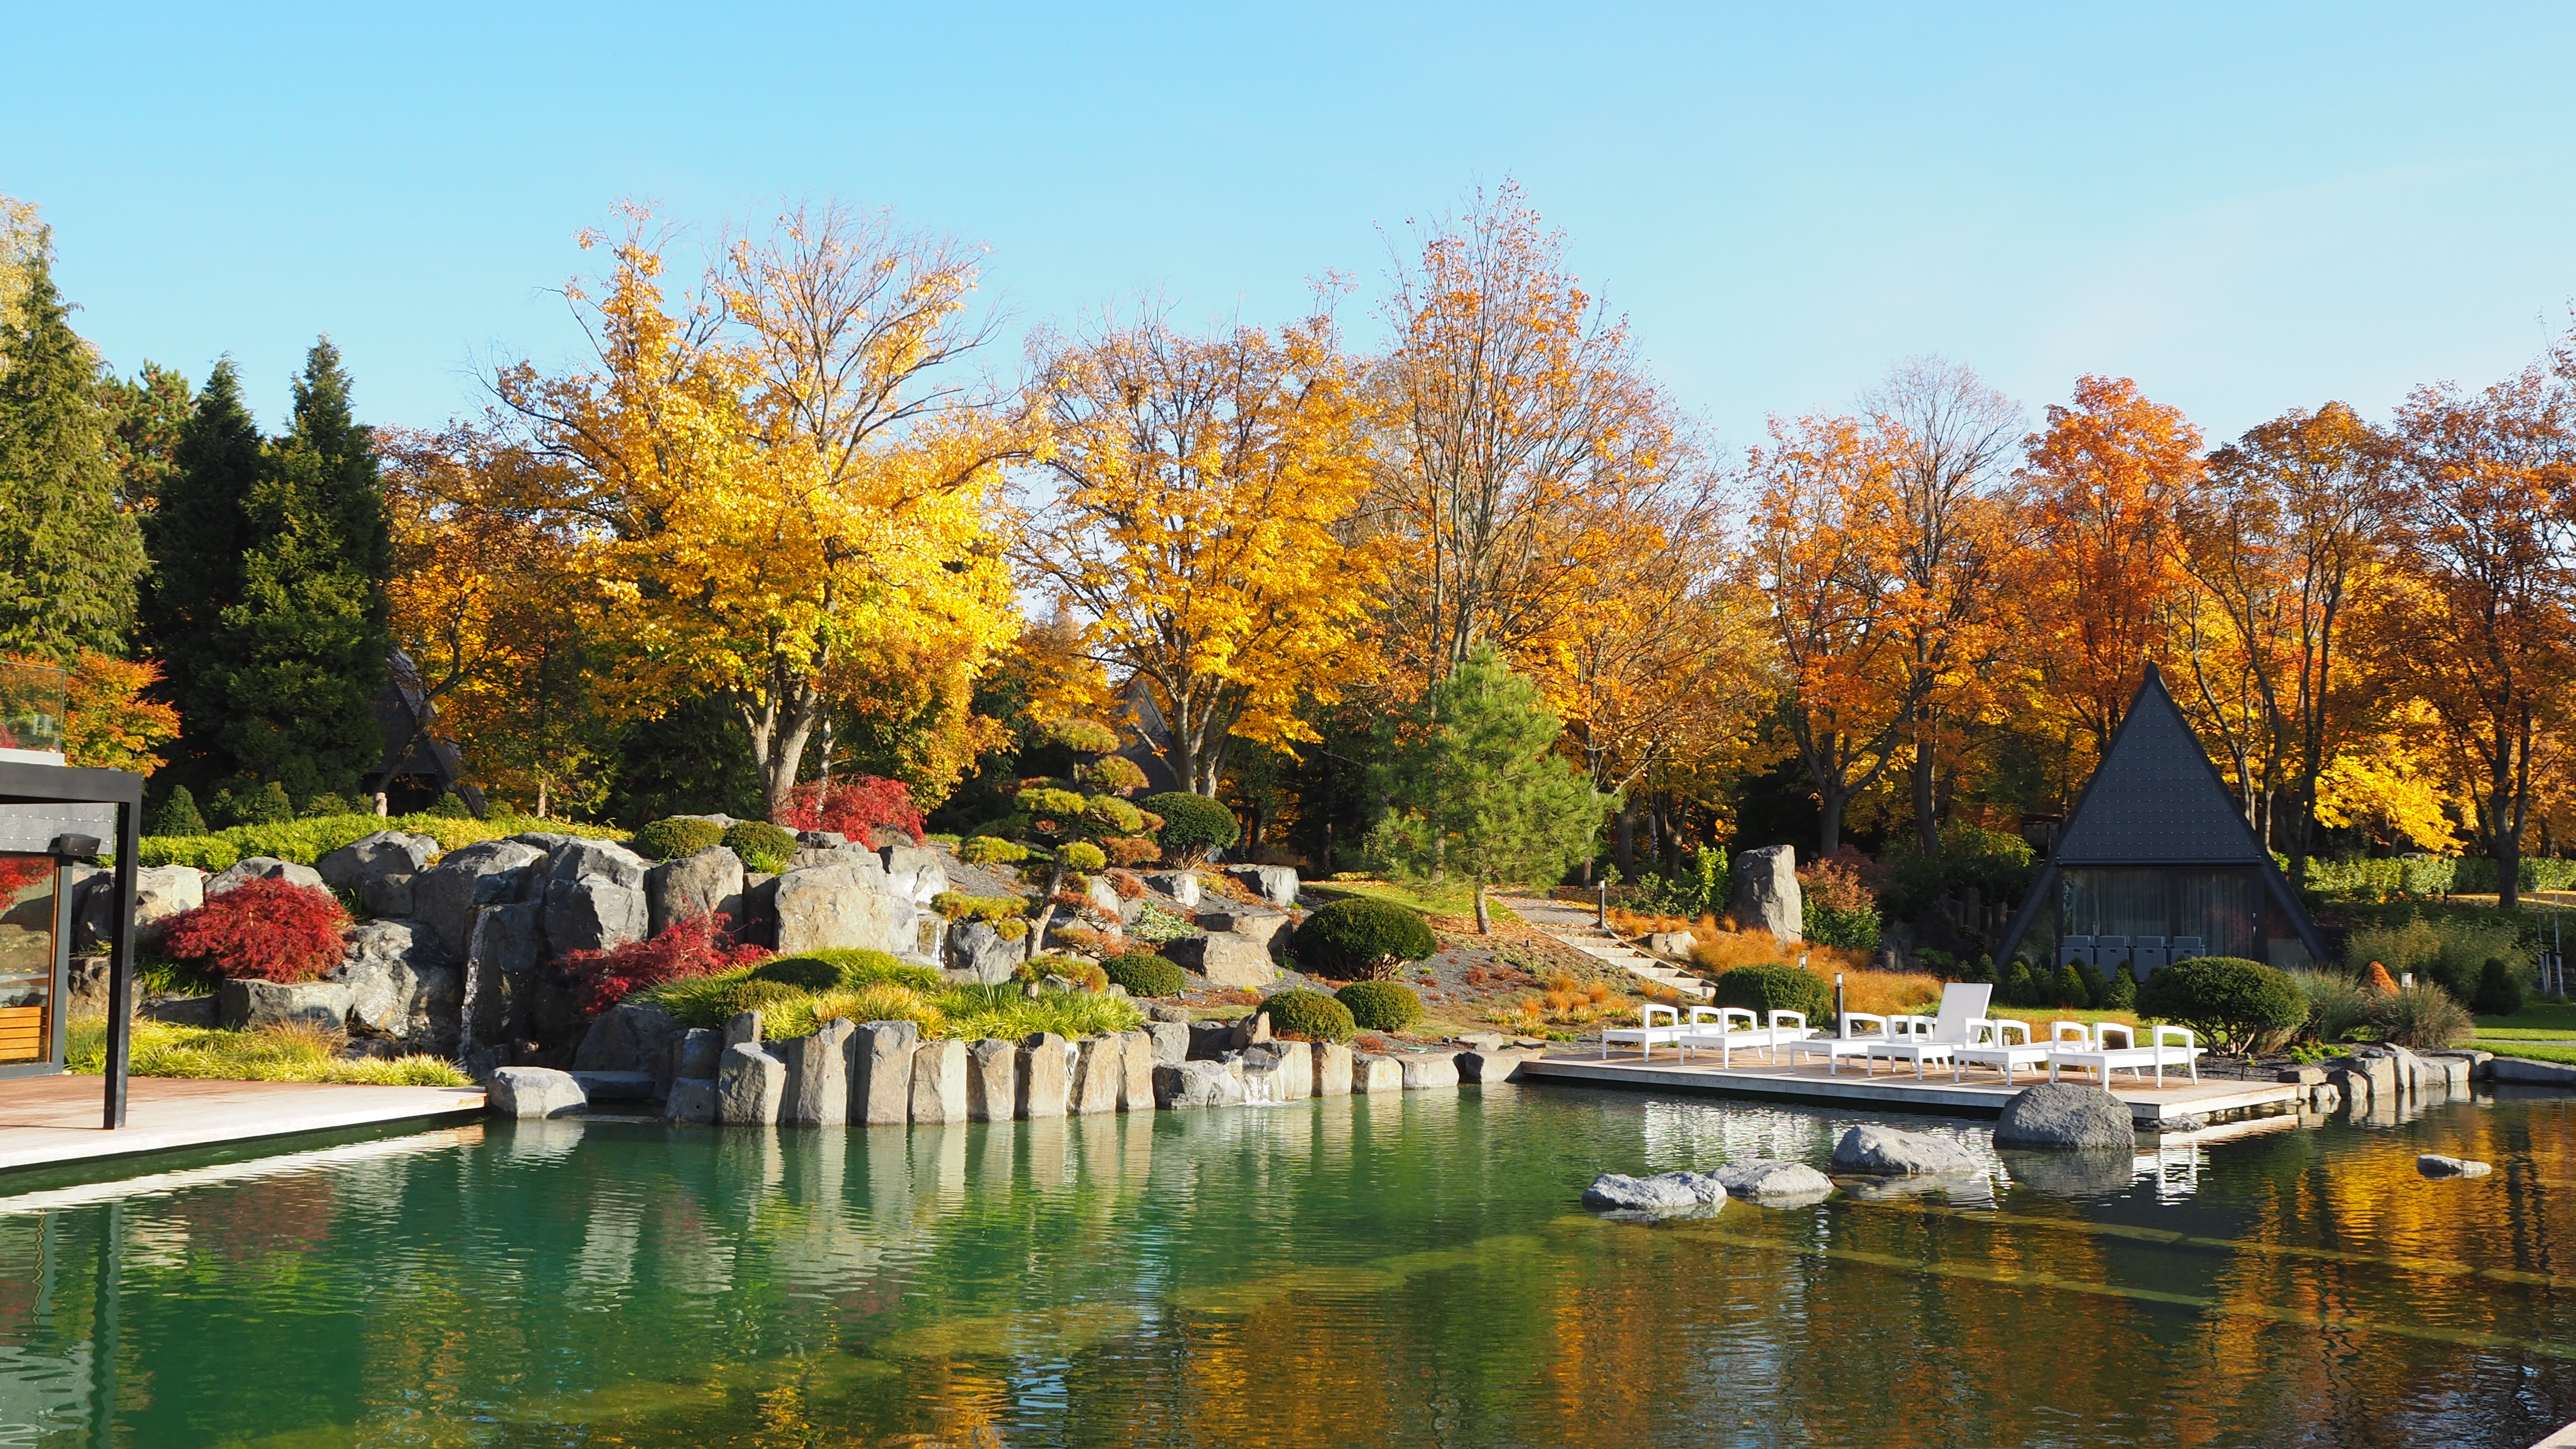 Titkos, ősfás liget a Káli-medence kapujában – Feltöltődés testnek és léleknek a Zen Garden Resortban